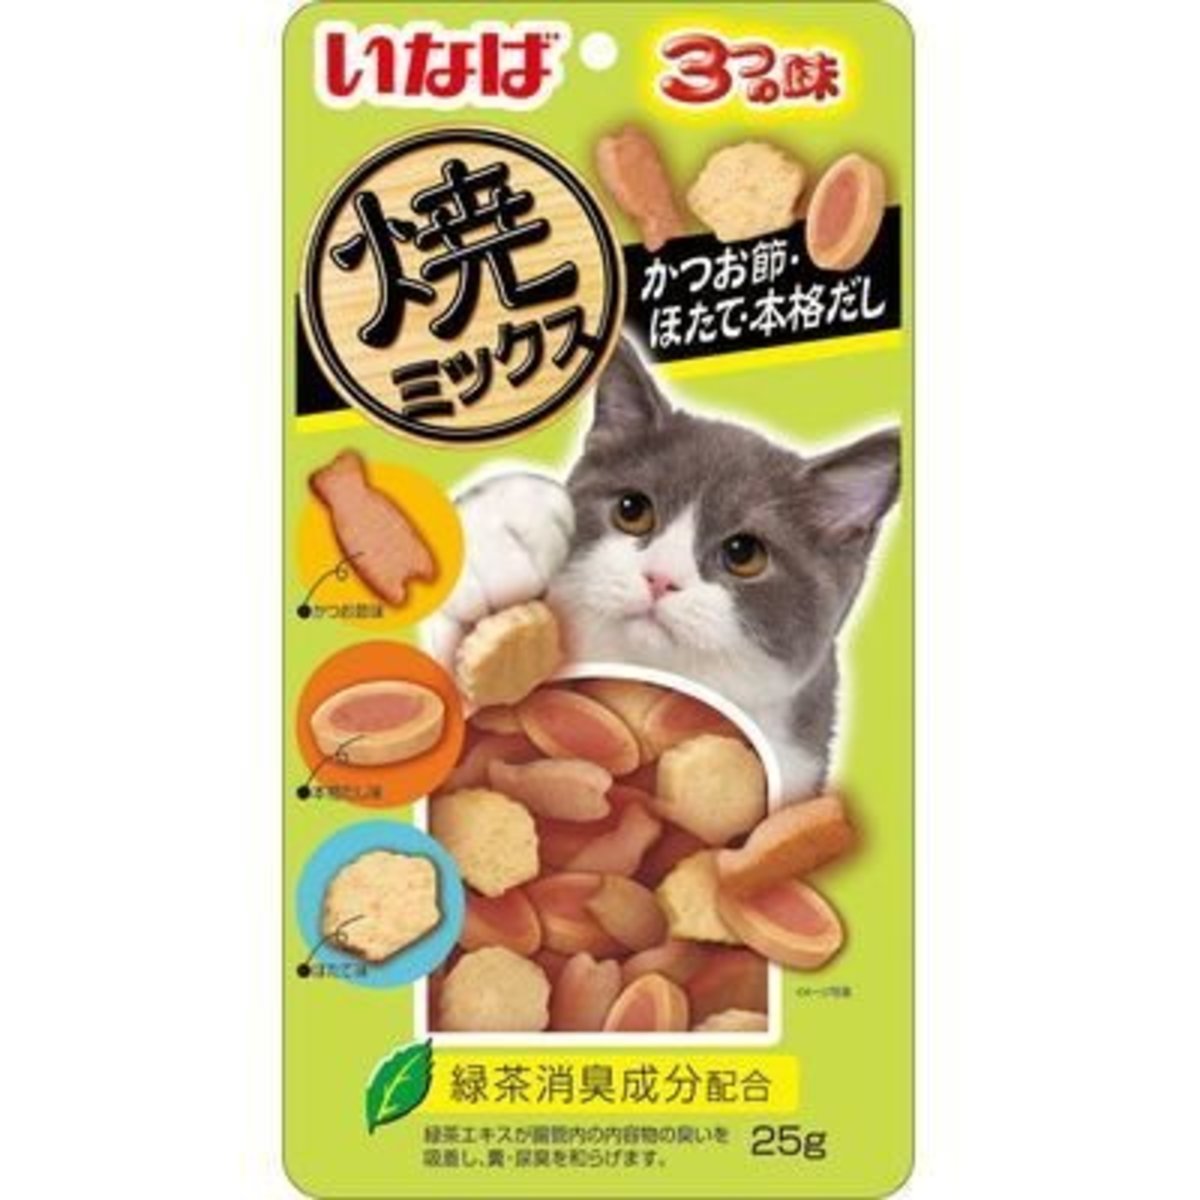 貓貓燒鰹魚餅小食-鰹魚扇貝 25g